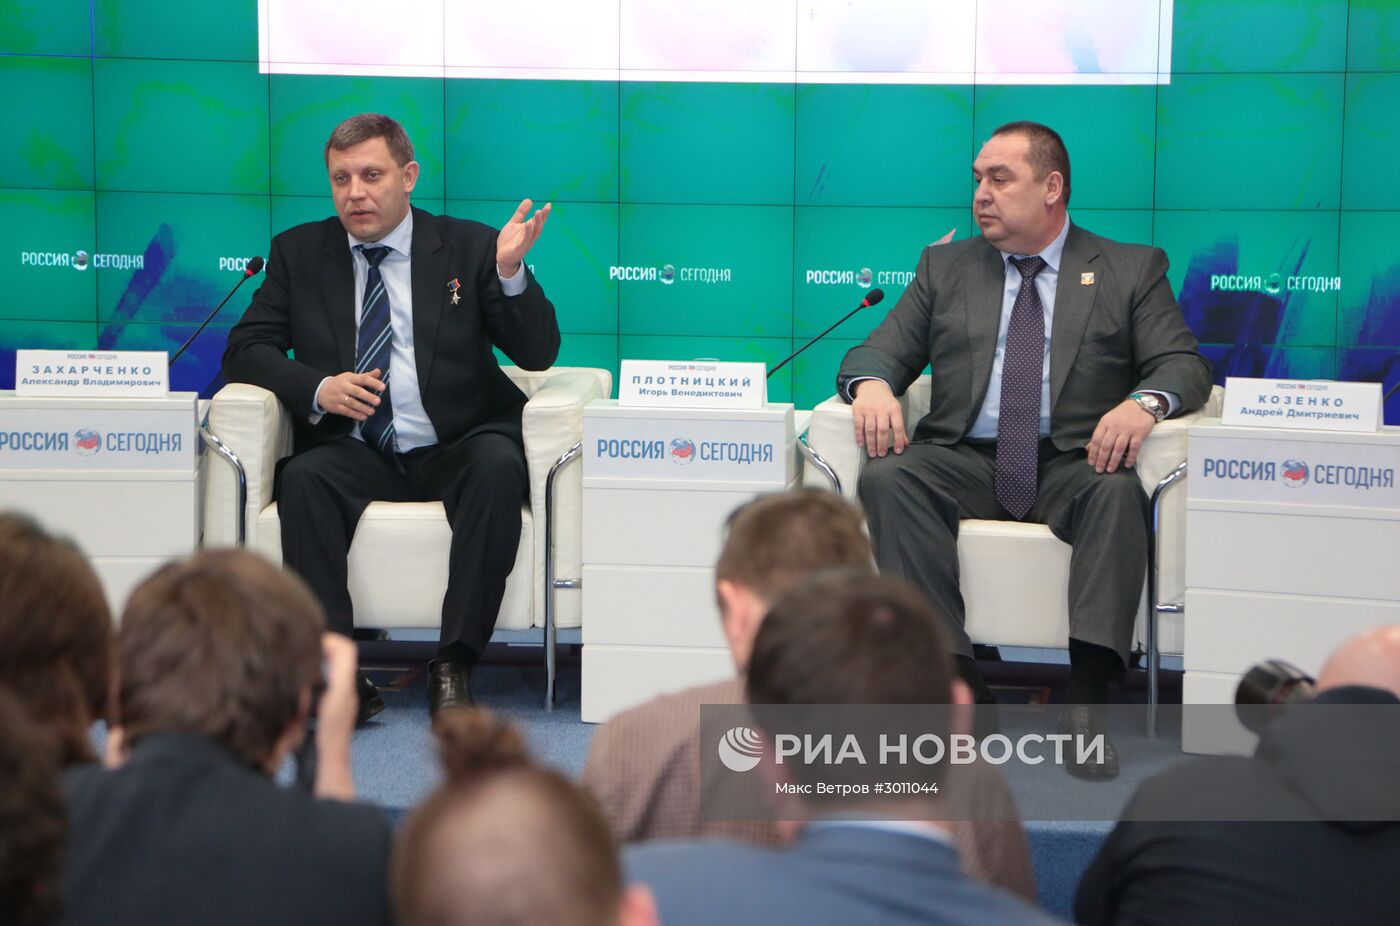 Пресс-конференция с участием лидеров ДНР и ЛНР в Крыму